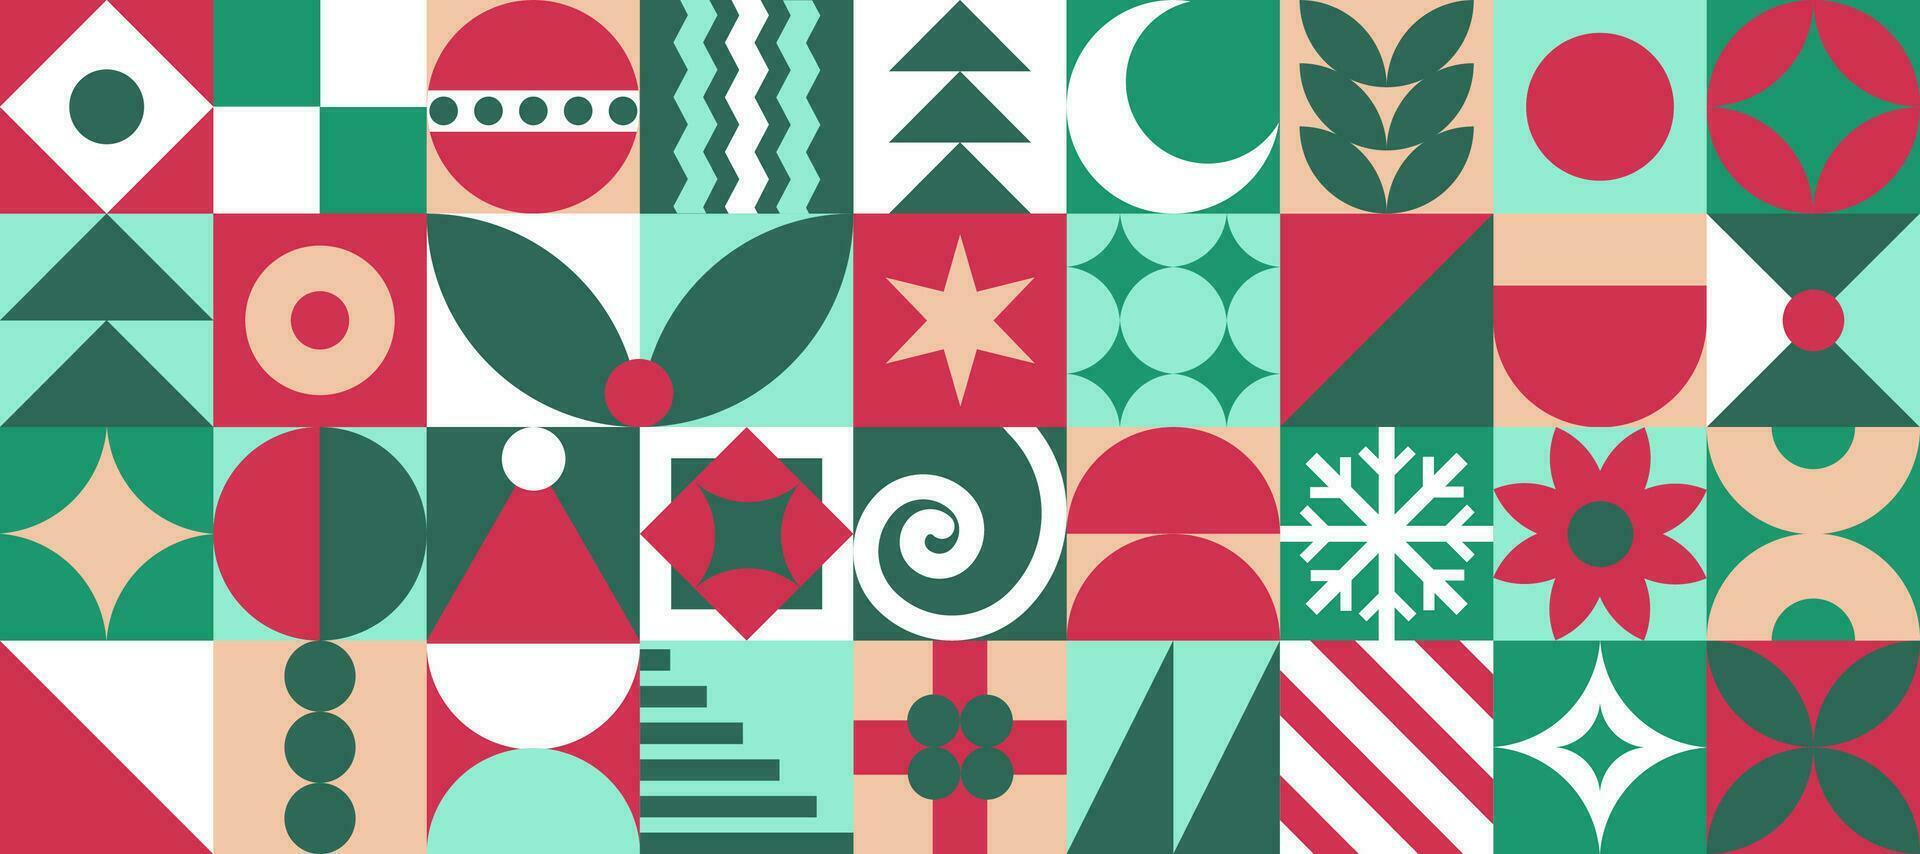 moderno bauhaus Natal padrão, fundo com gráfico azulejos com abstrato desenhos do símbolos do a feriado, abeto árvore, presentes, chapéu, estrela, lua, básico geométrico formas. vetor ilustração.